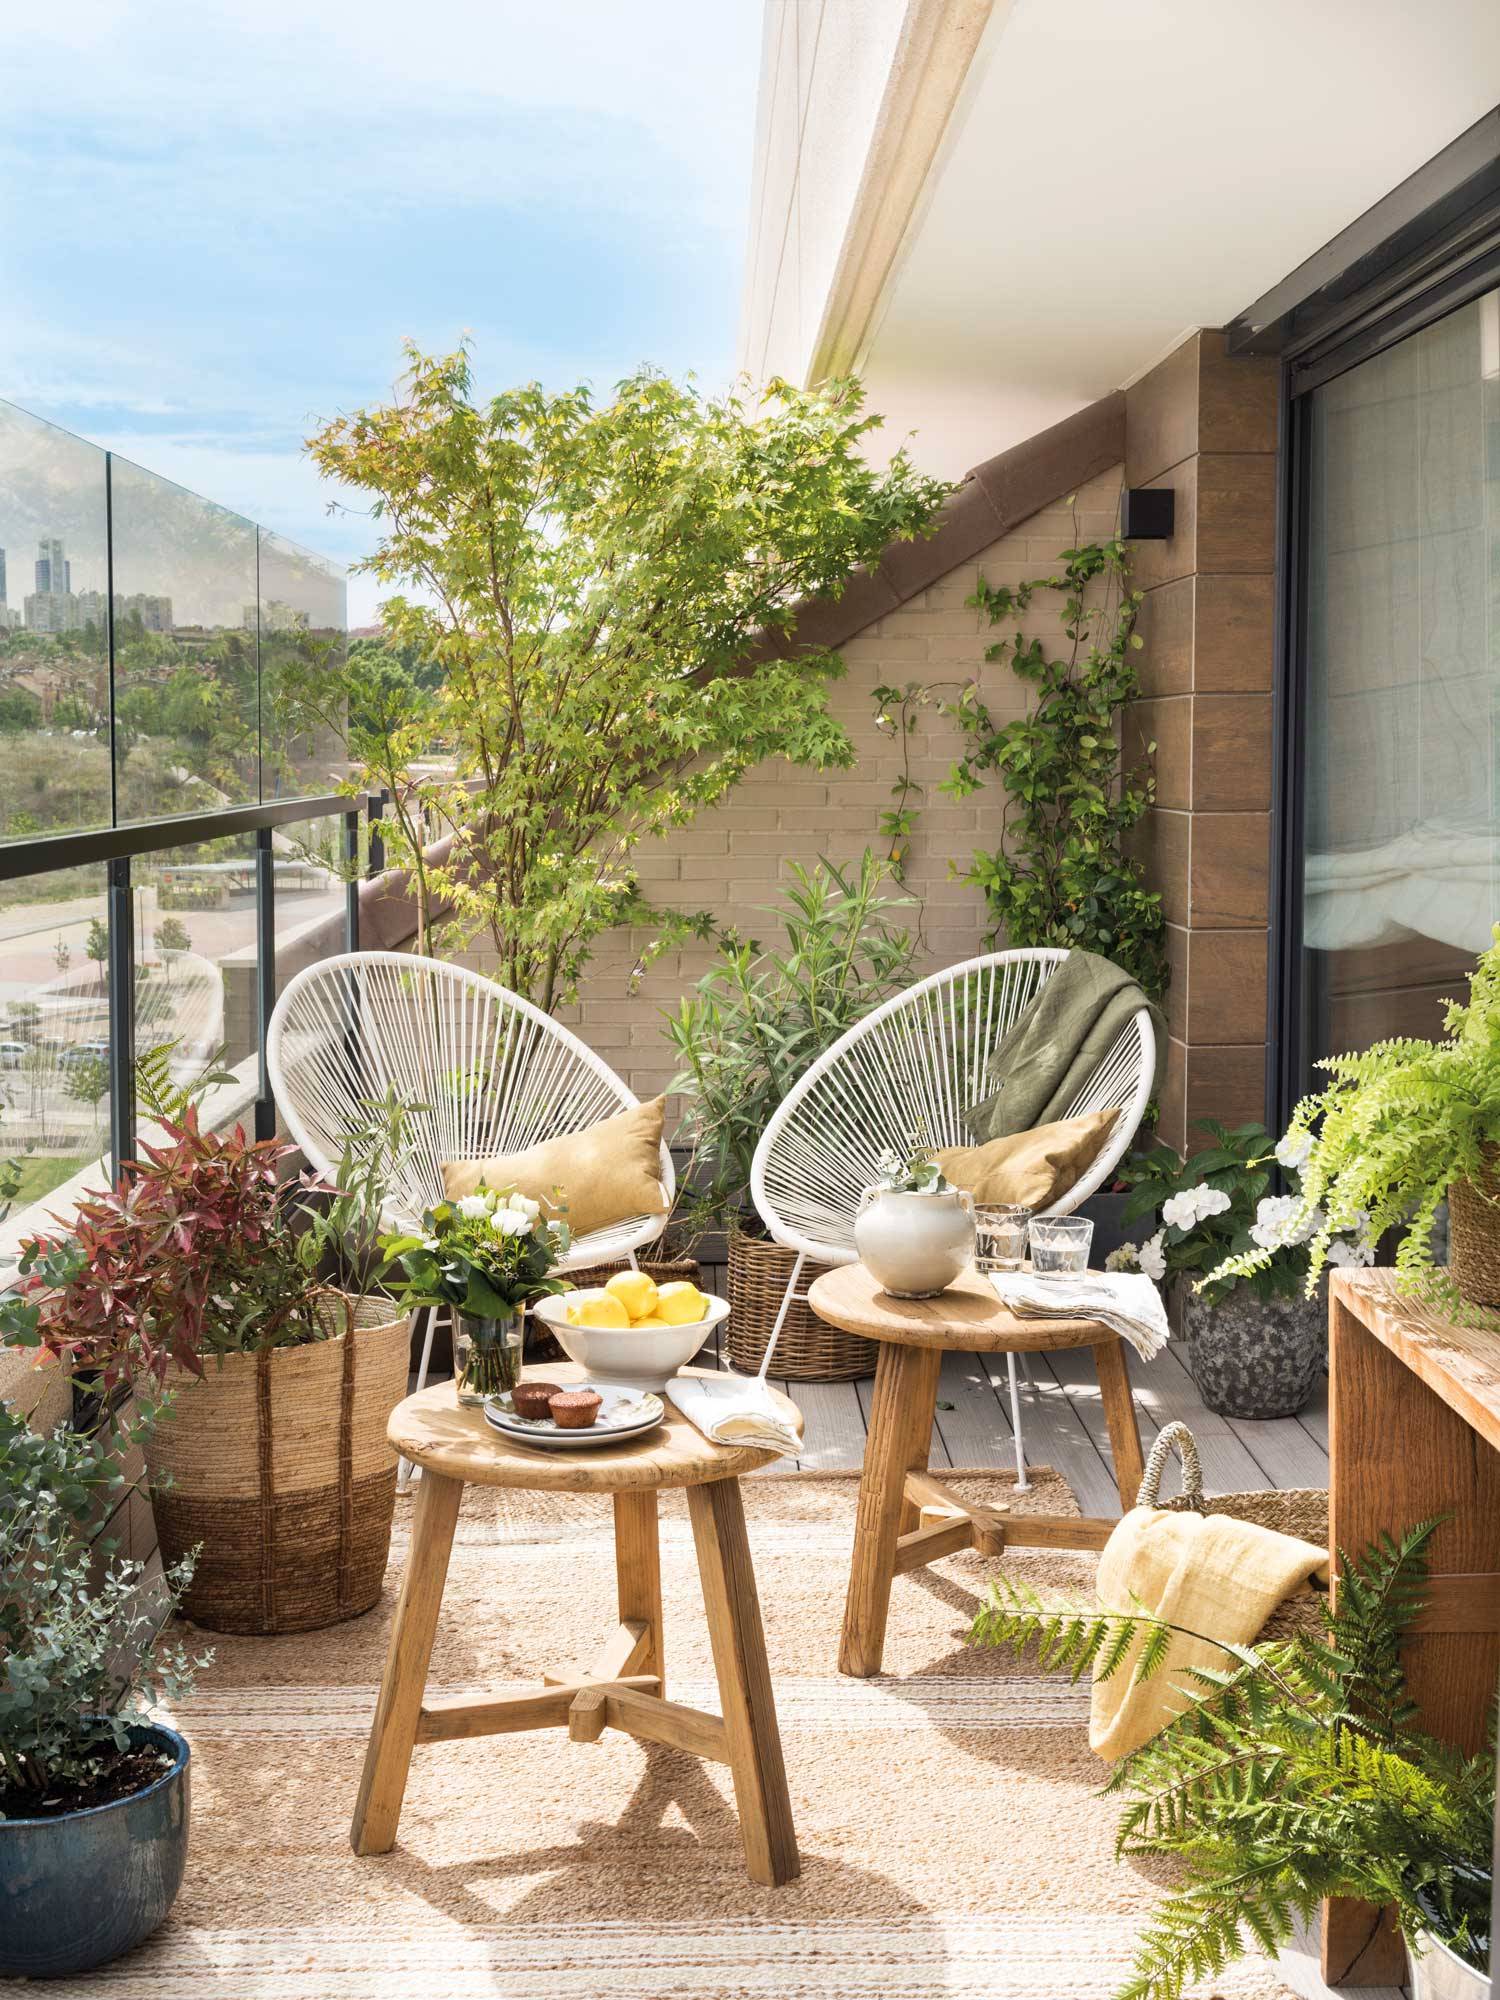 Terraza con dos sillas Acapulco blancas y muchas plantas 00511496